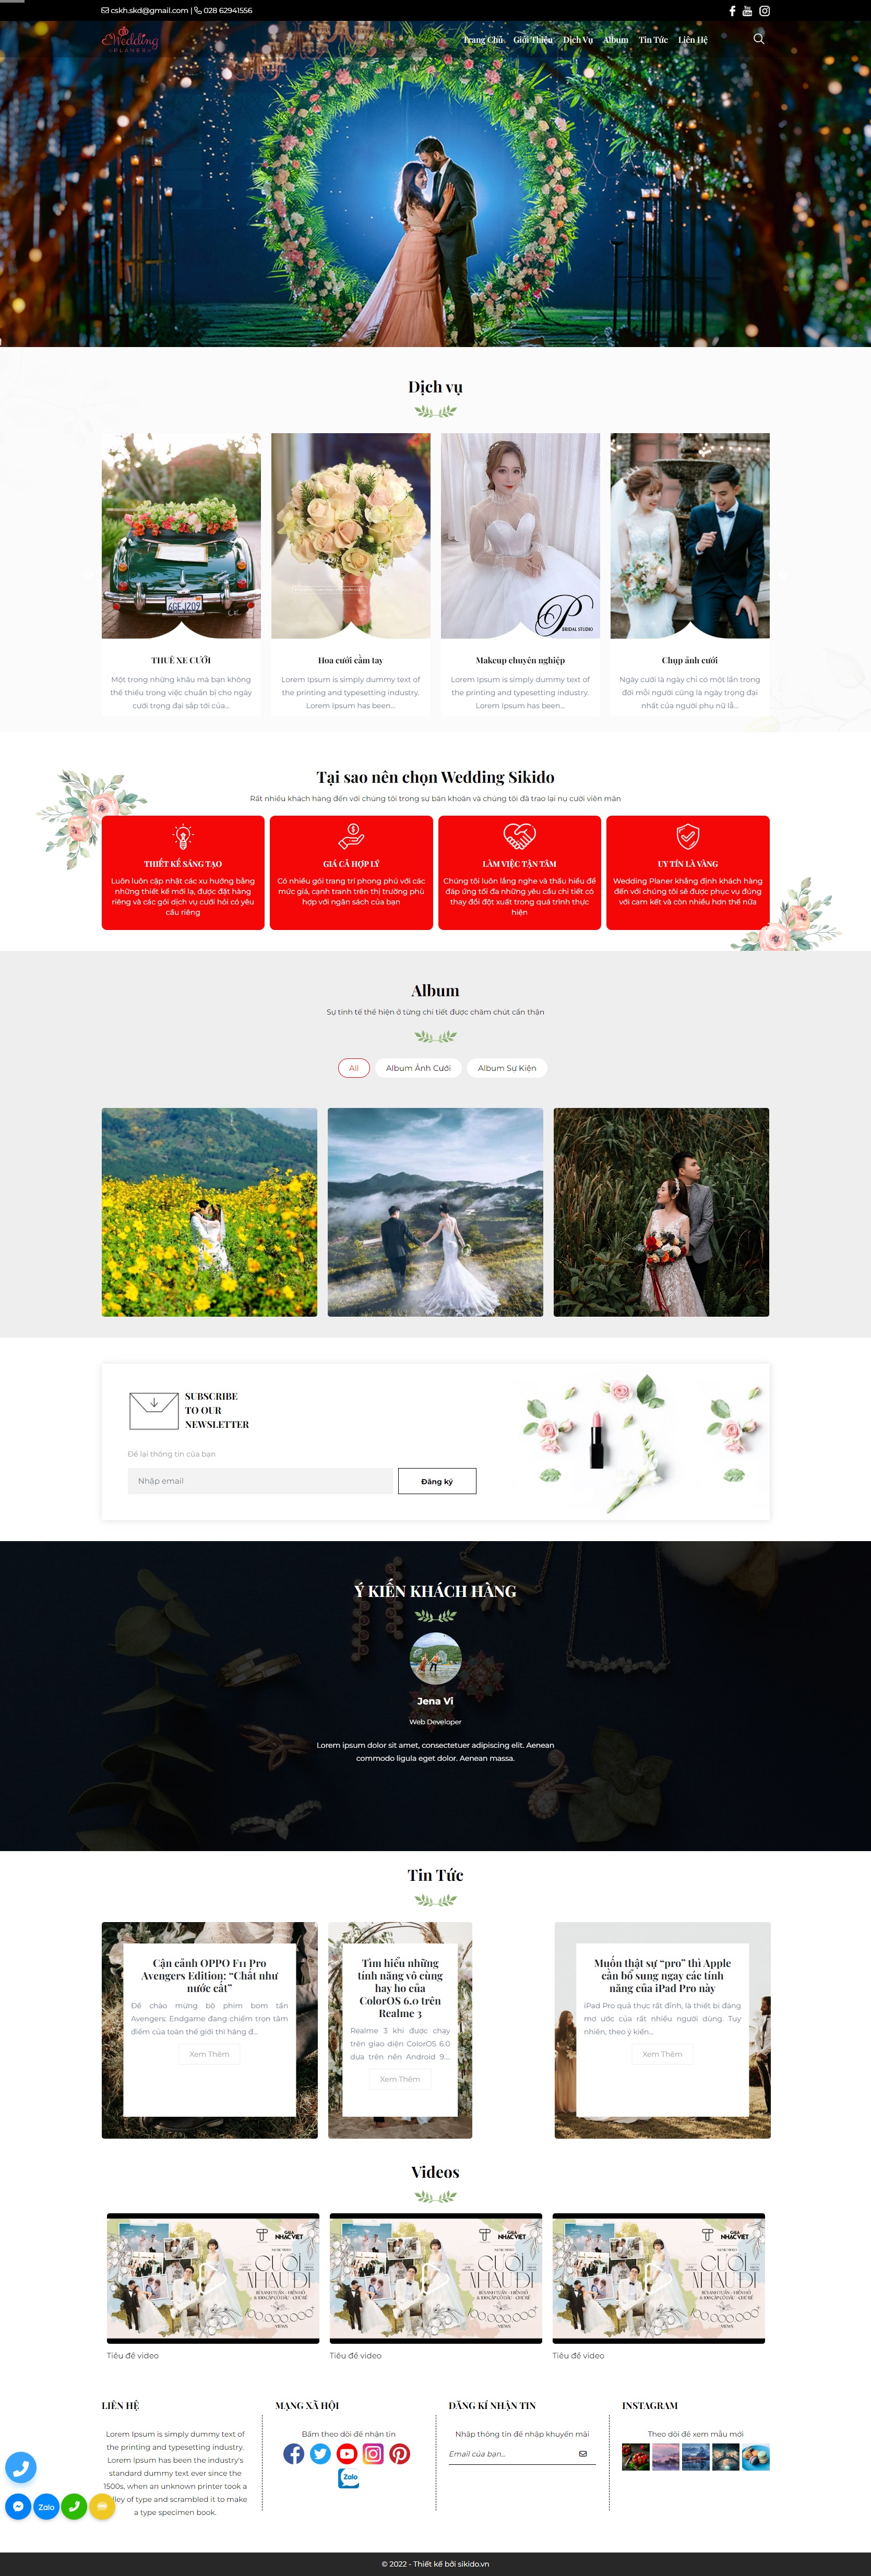 Thiết kế website theo yêu cầu khách hàng chuyên nghiệp tại WEB40.vn